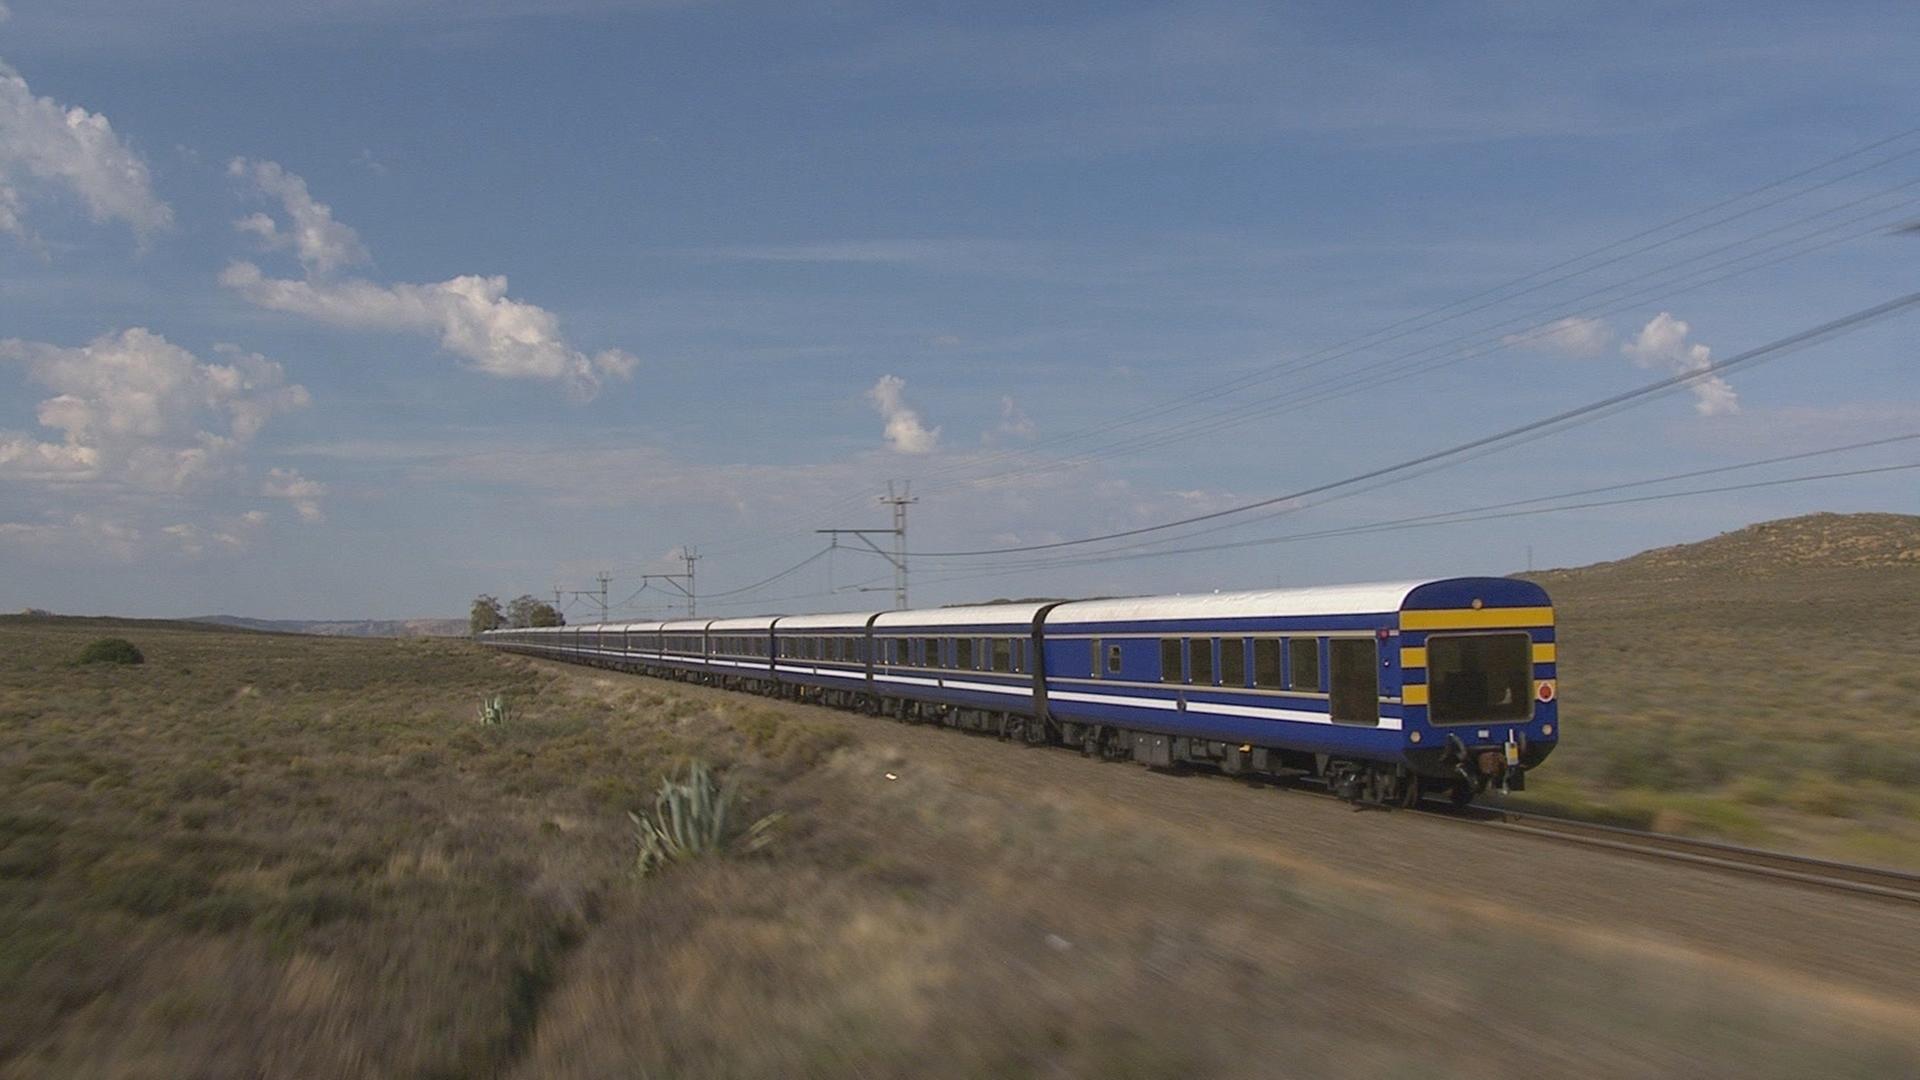  Ein blauer Zug fährt von links nach rechts in karger Landschaft.